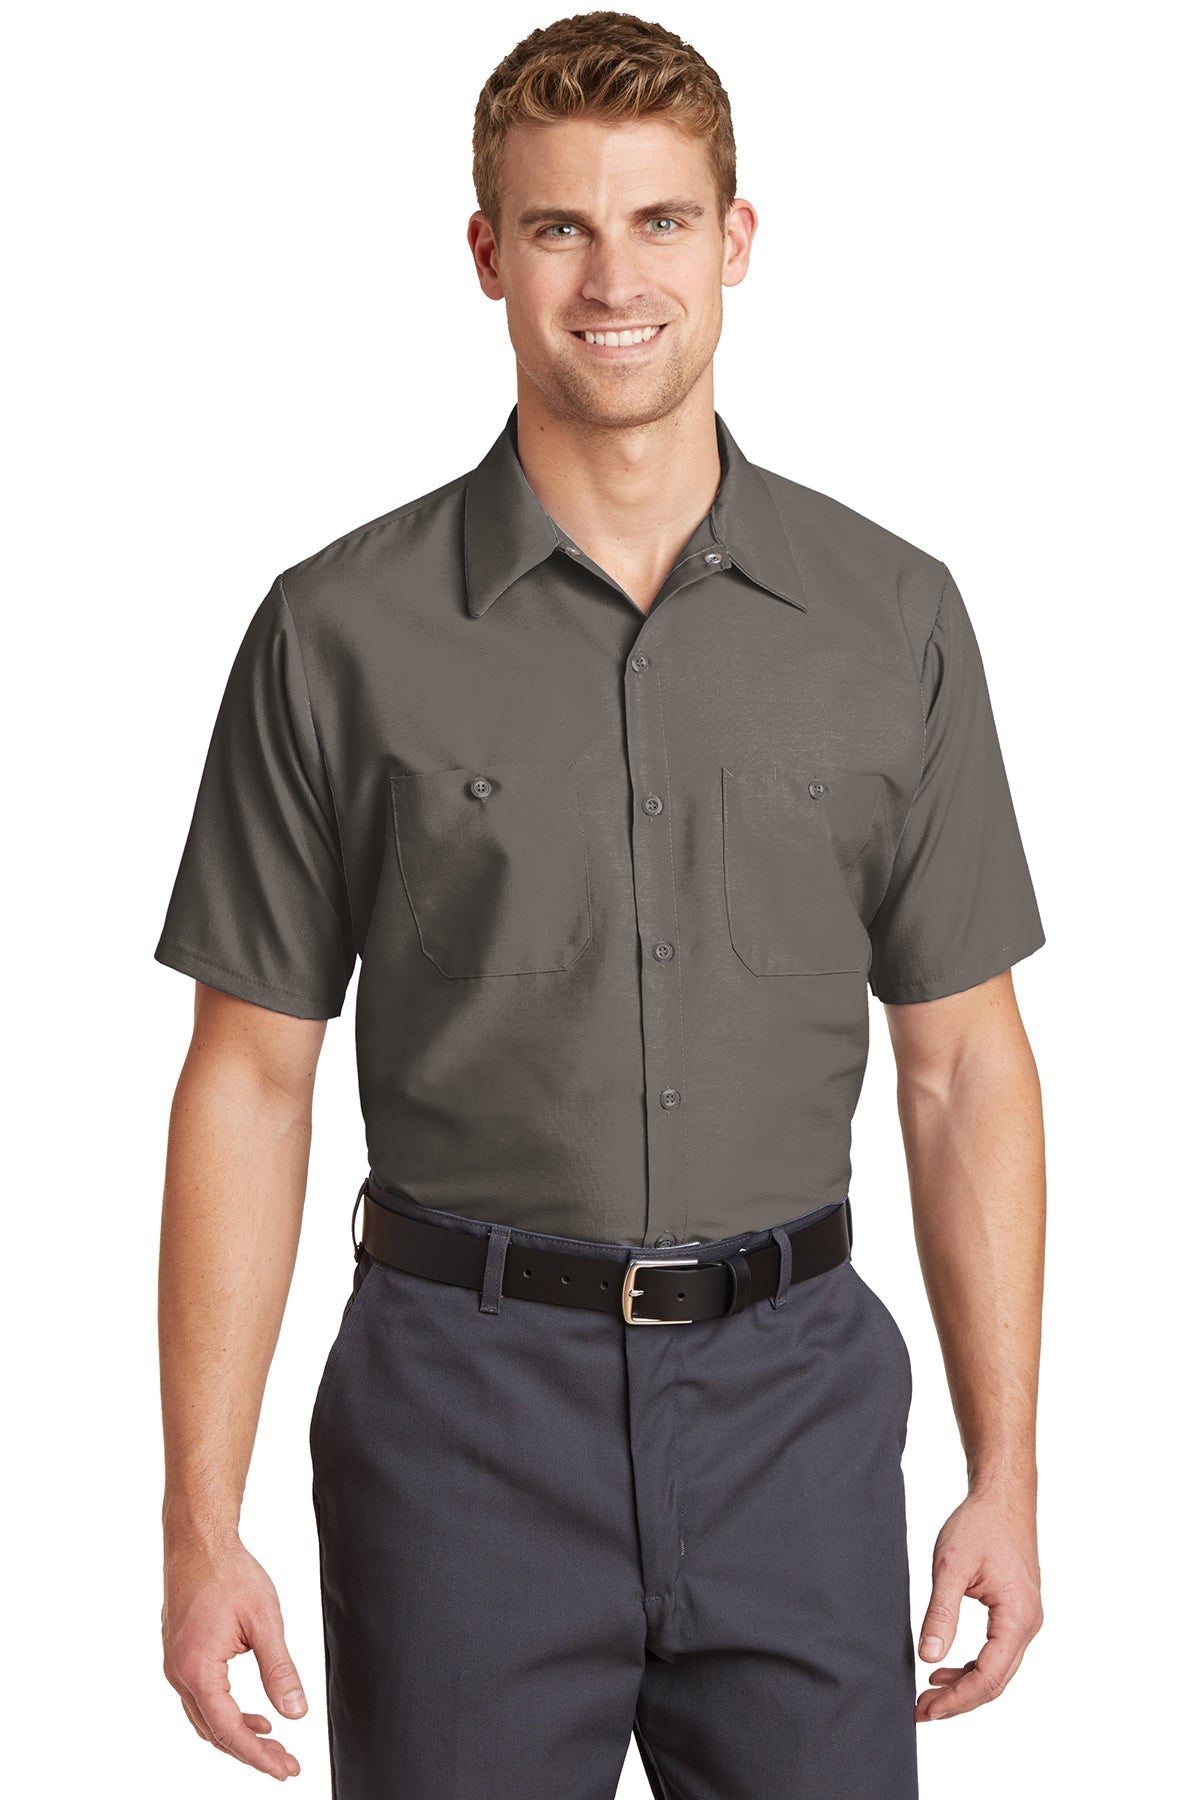 SP24LONG Red Kap Long Size, Short Sleeve Industrial Work Shirt